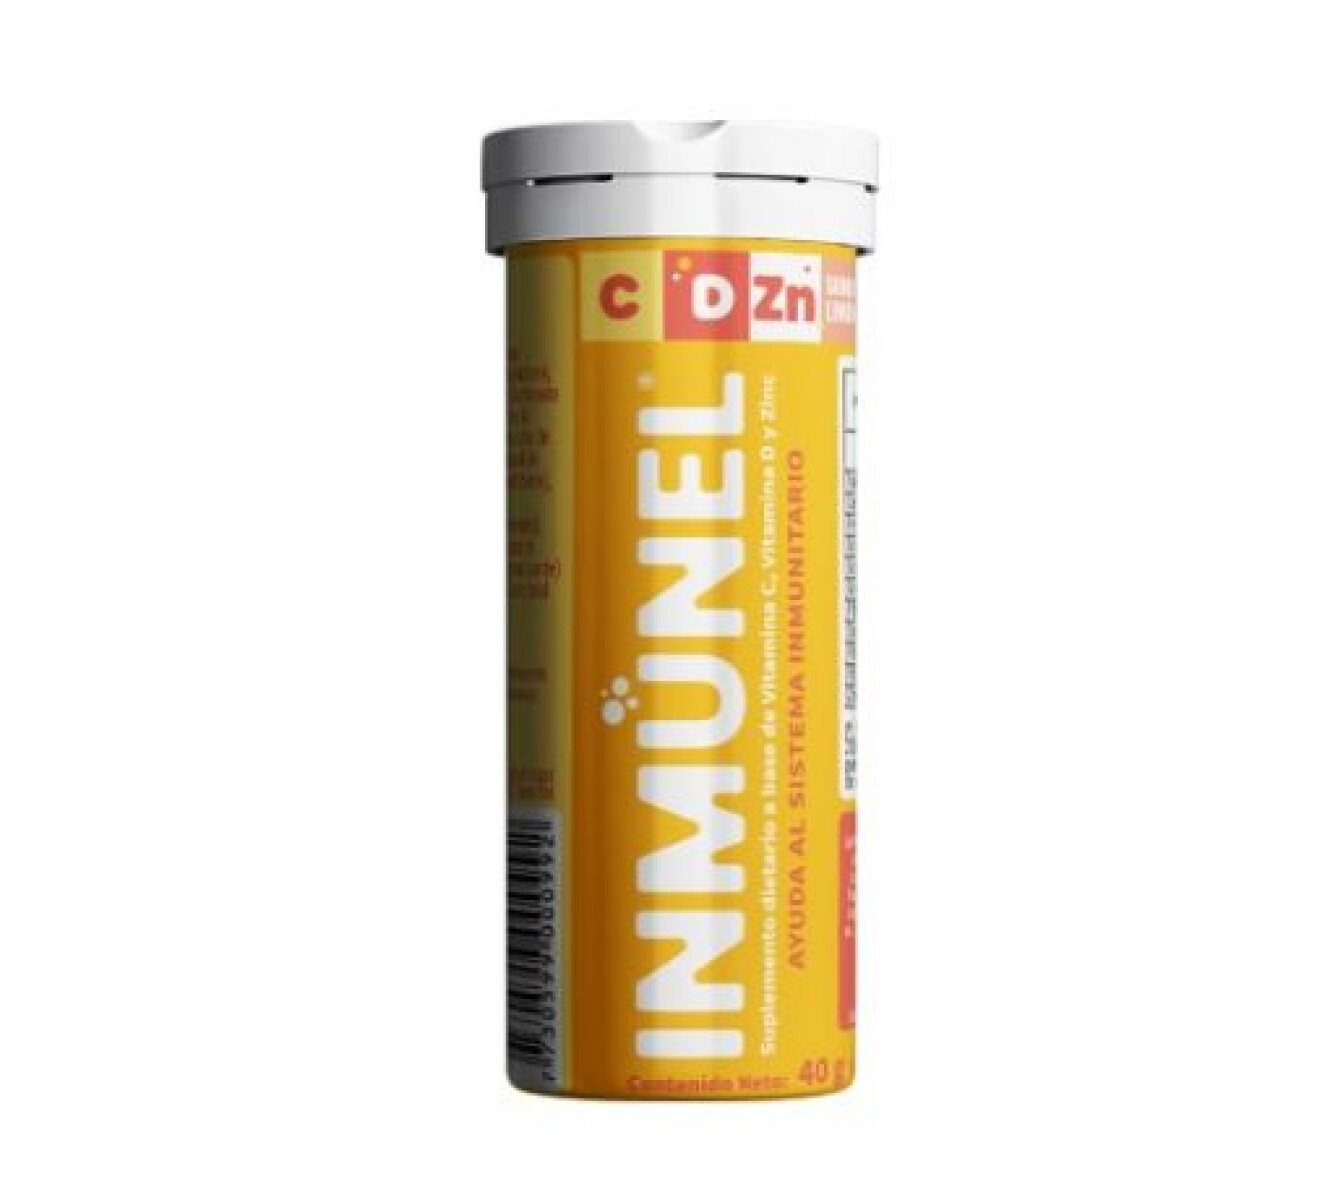 Inmunel ( Vit C + Vit D + Zinc) 10 Comp Efervescentes 